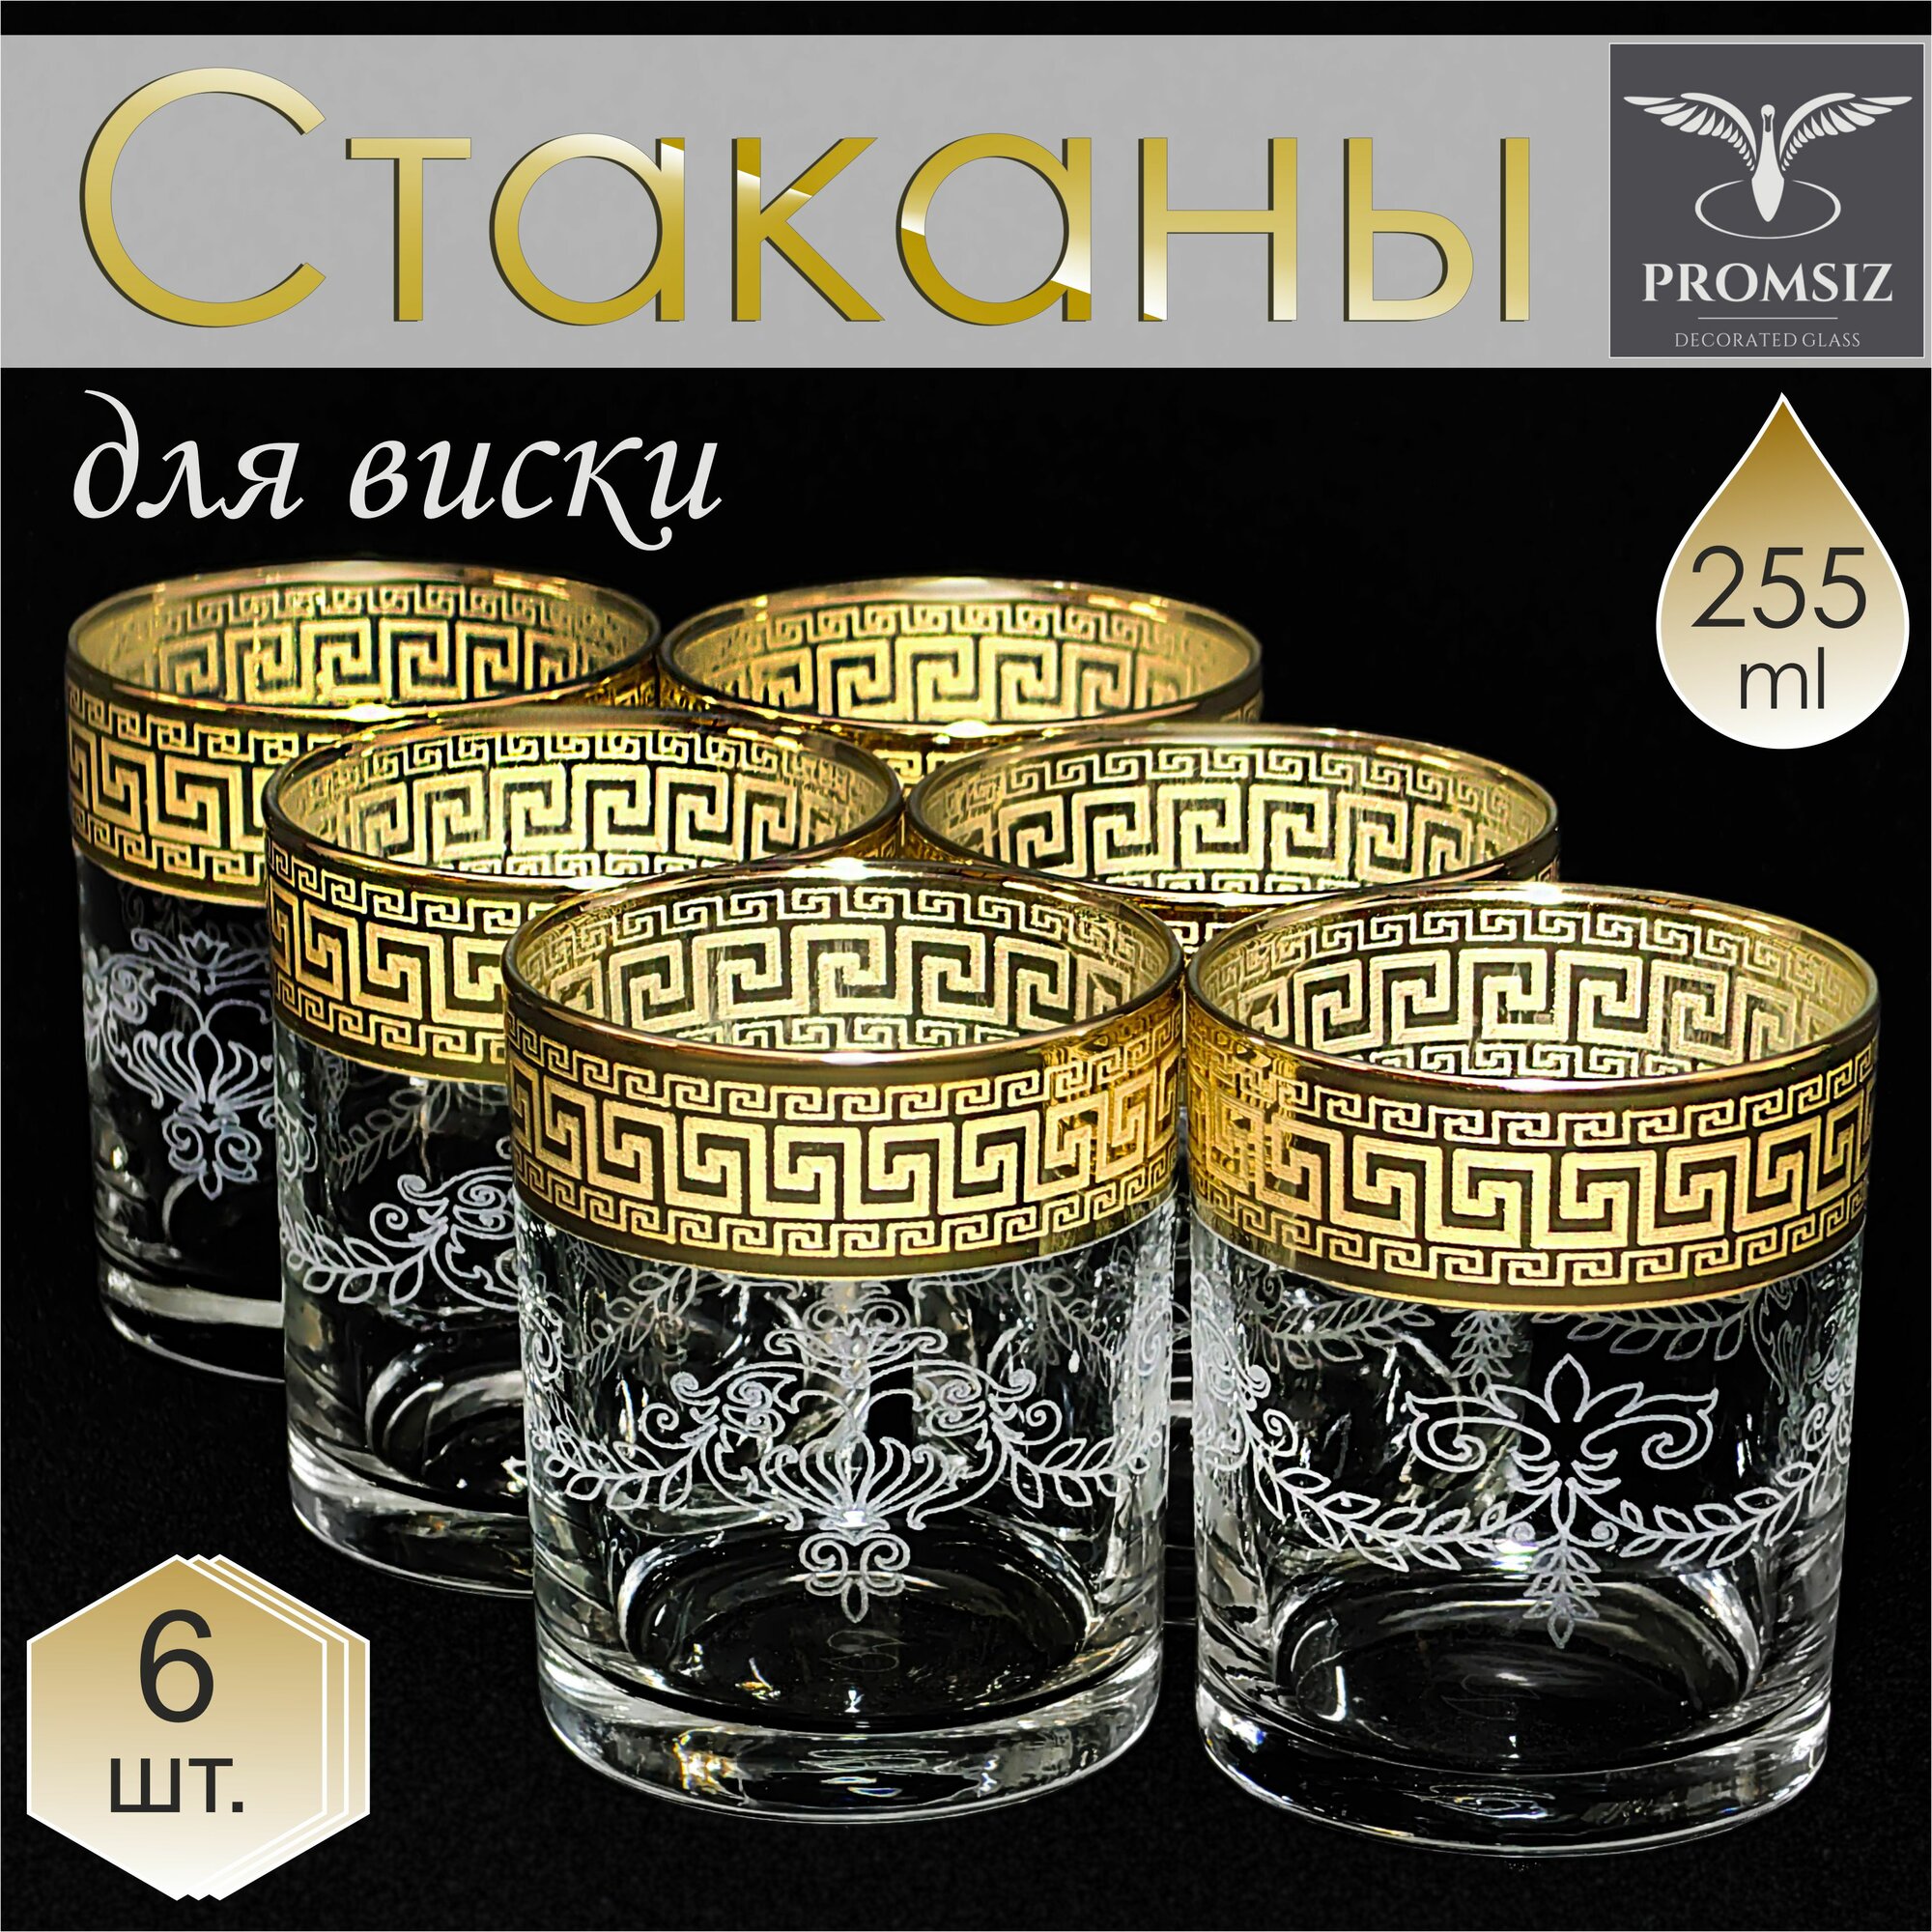 Подарочный набор стаканов для виски с алмазной гравировкой PROMSIZ барокко / подарок мужчине, папе, мужу, начальнику / 255 мл, 6 шт.